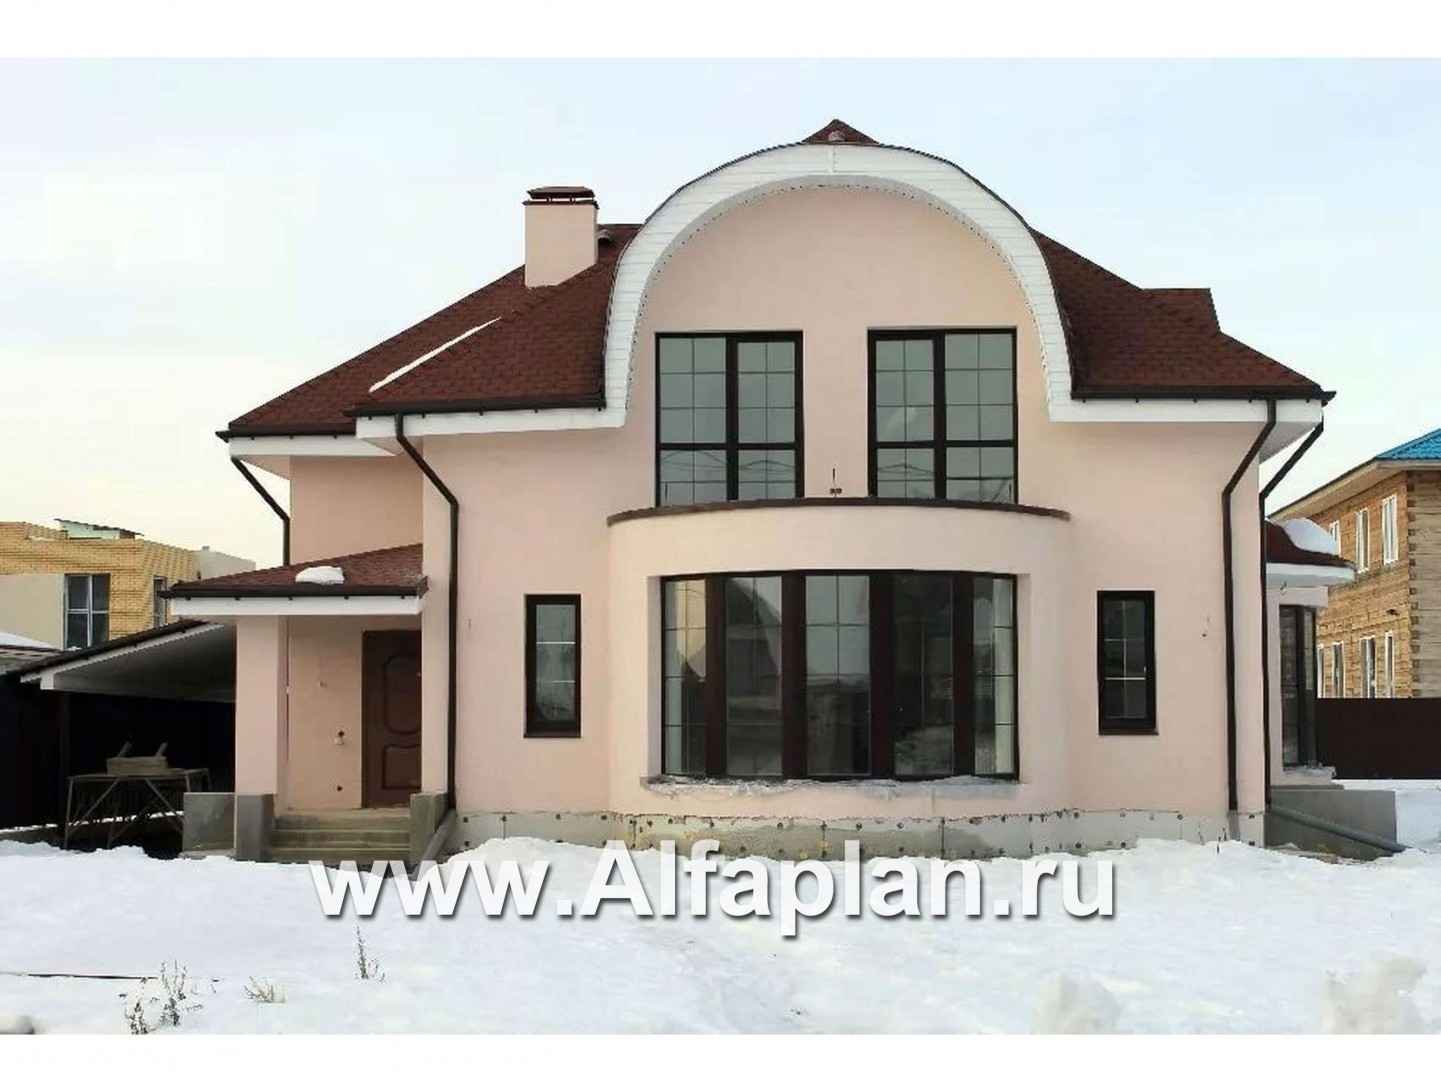 Проекты домов Альфаплан - «Новелла» - архитектурная планировка с полукруглым зимним садом - дополнительное изображение №1